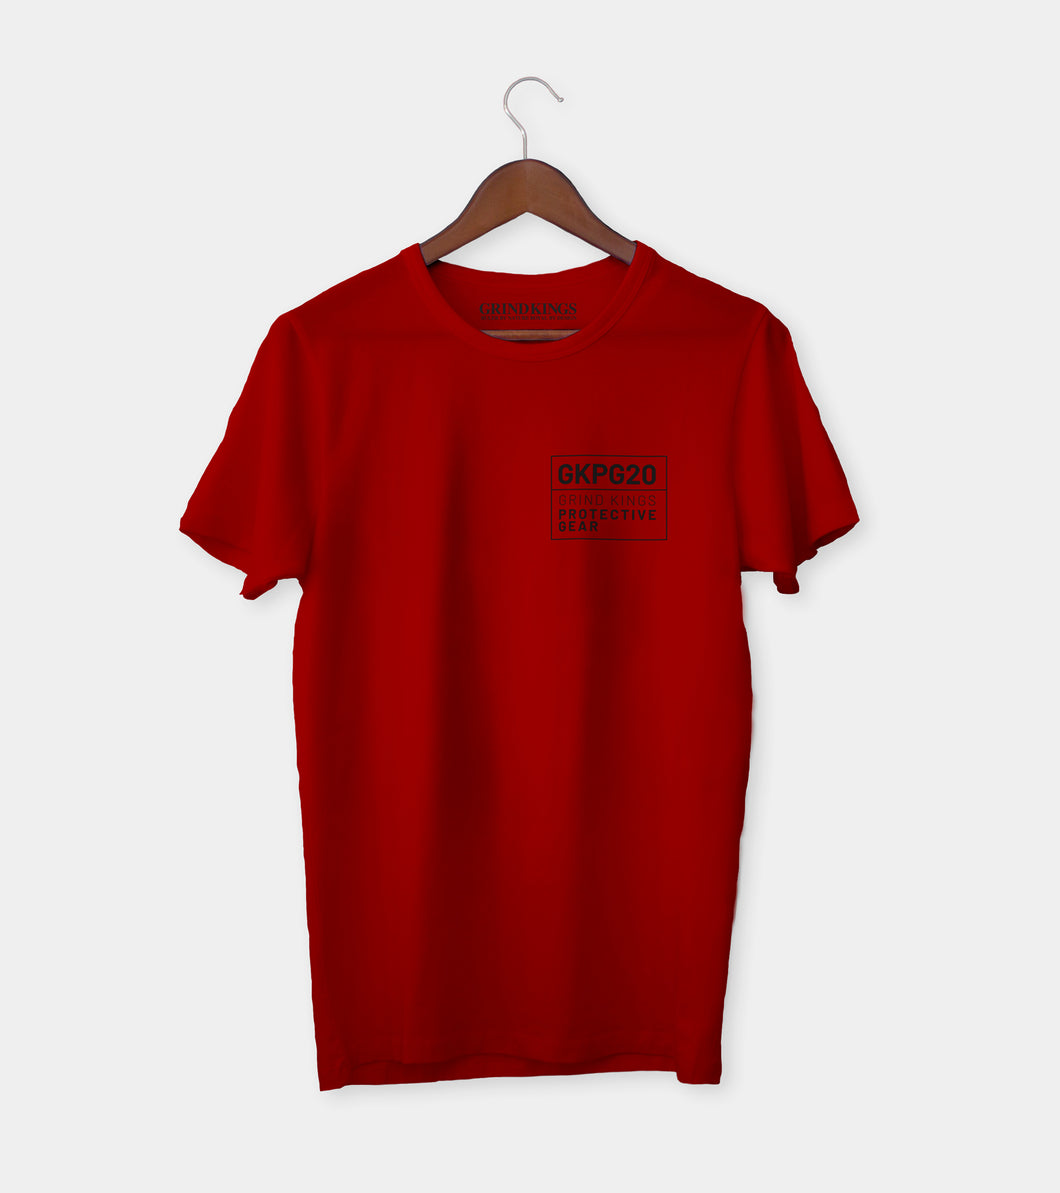 GKPG20 Logo Basic T-shirt - Red